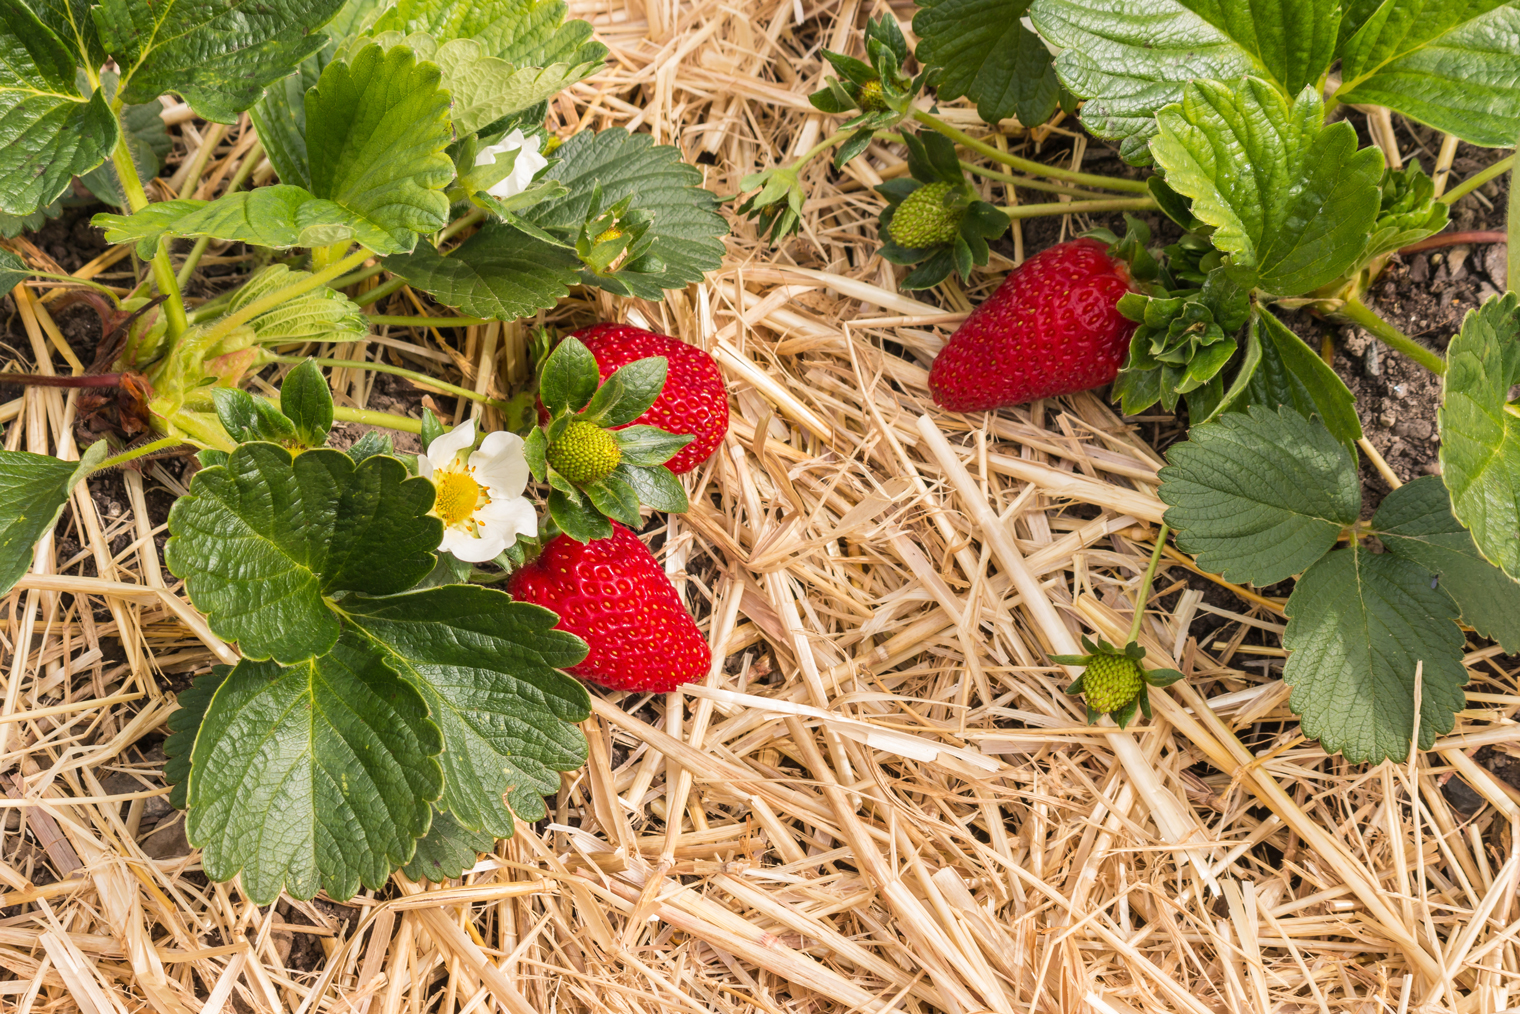 Солома и сено хороши еще и тем, что ягоды не будут соприкасаться с землей и останутся чистыми даже после дождей и поливов. Фотография: patjo / Shutterstock / FOTODOM